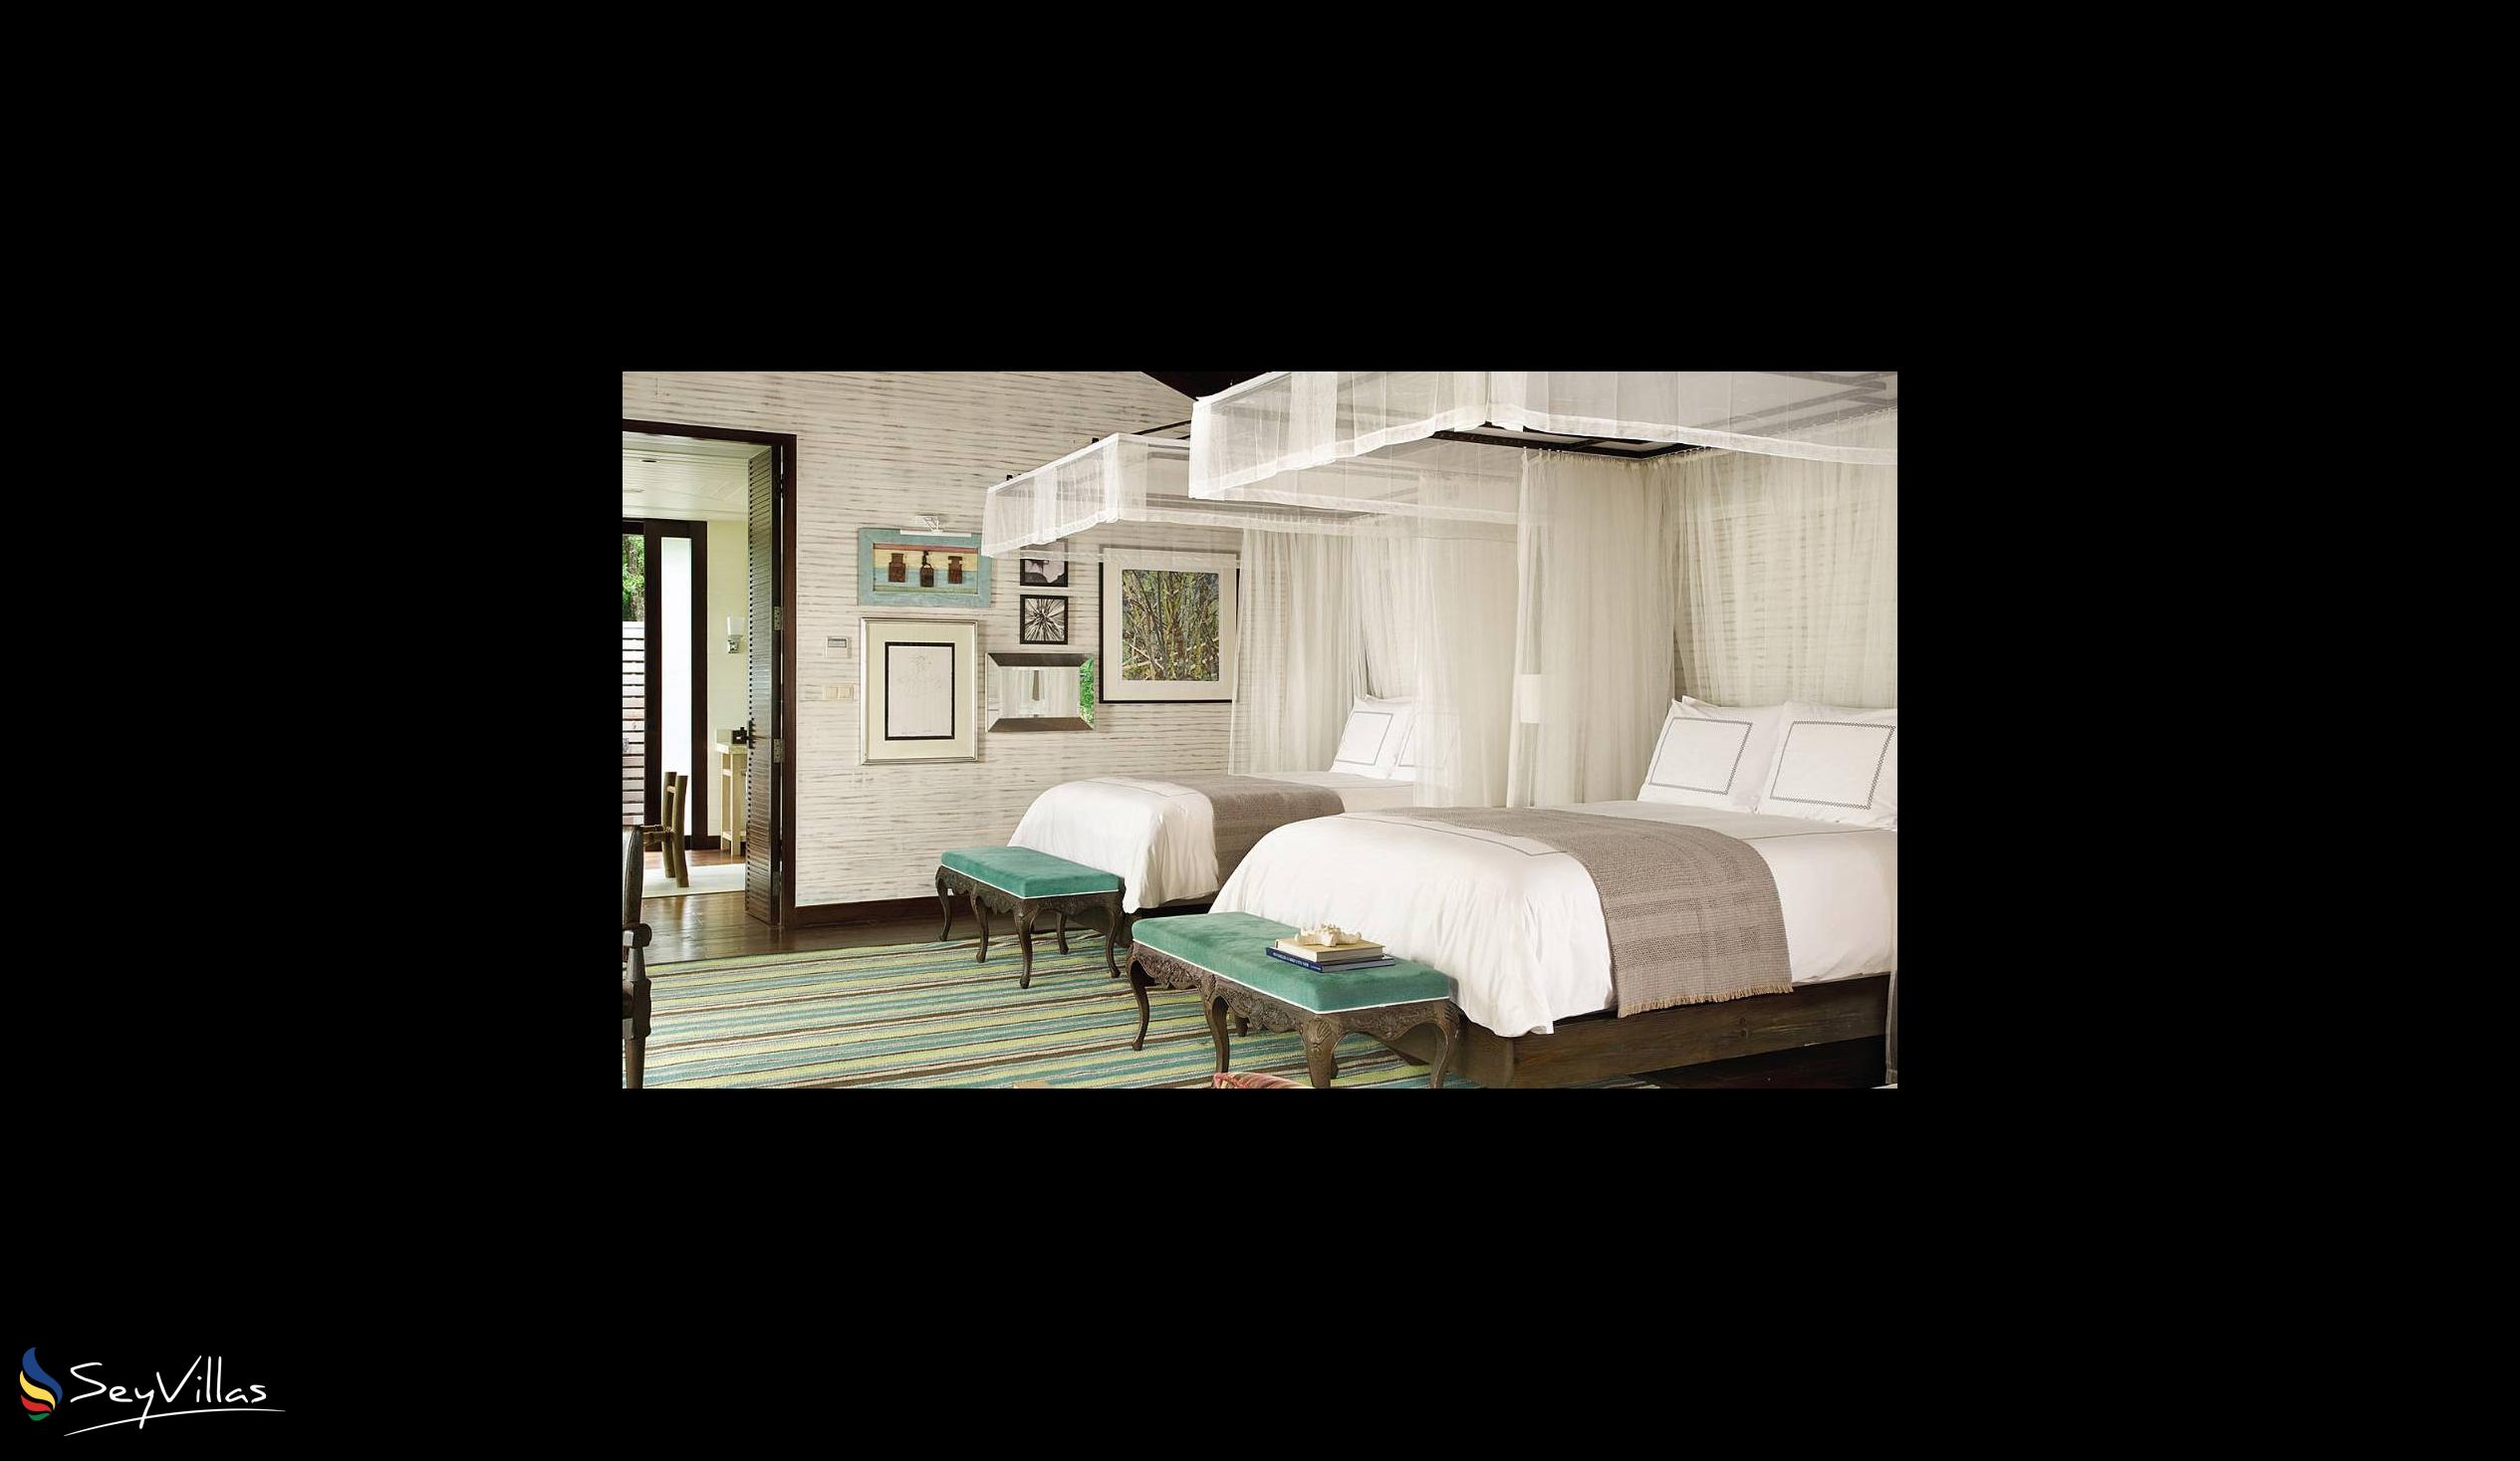 Foto 51: Four Seasons Resort - 2-Bedroom Hilltop Ocean View Suite - Mahé (Seychellen)